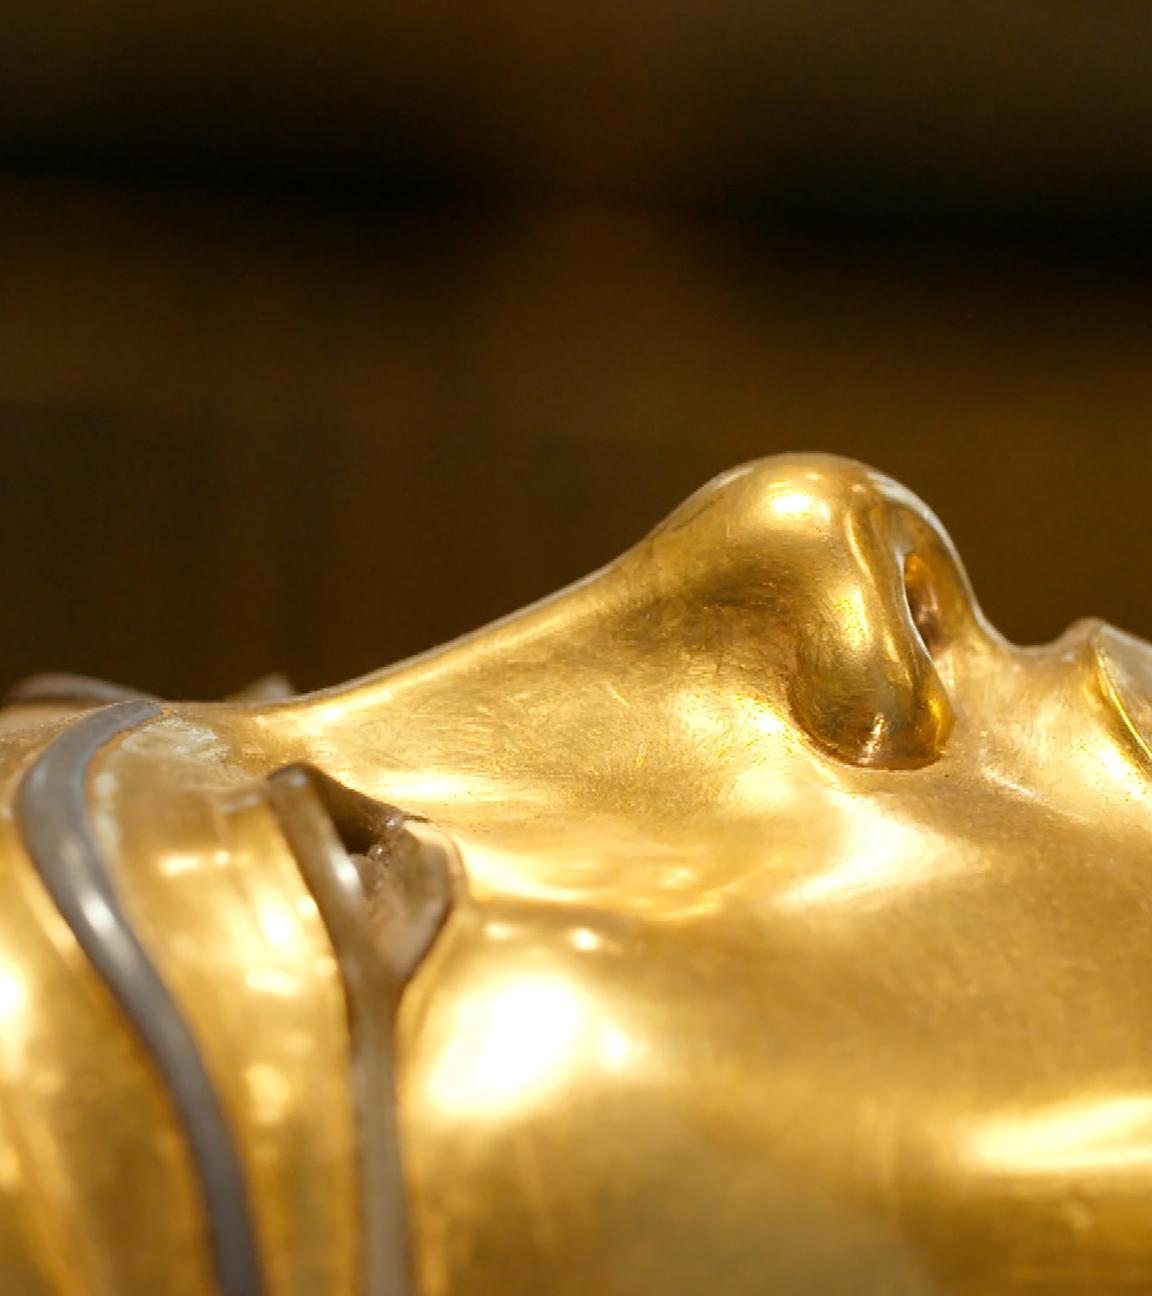 Profilansicht der Goldenen Totenmaske Tutanchamuns, die sein Gesicht abbildet.